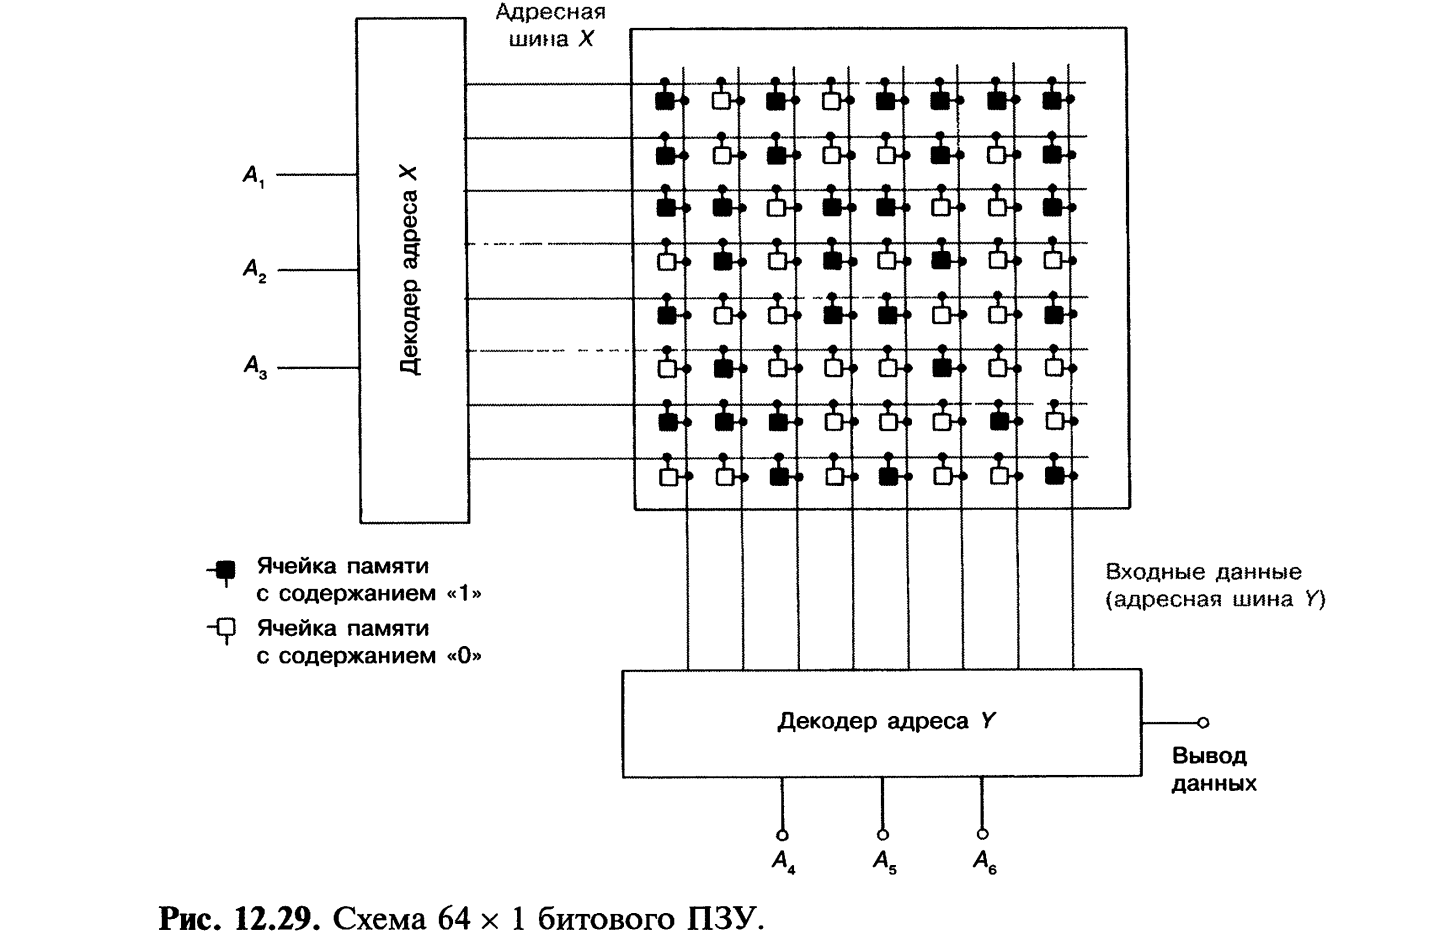 Электронная ячейка памяти. Логическая схема ячейки памяти. Оперативная память на логических элементах. Ячейка памяти на логических элементах. Ячейка памяти компьютера логическая схема.